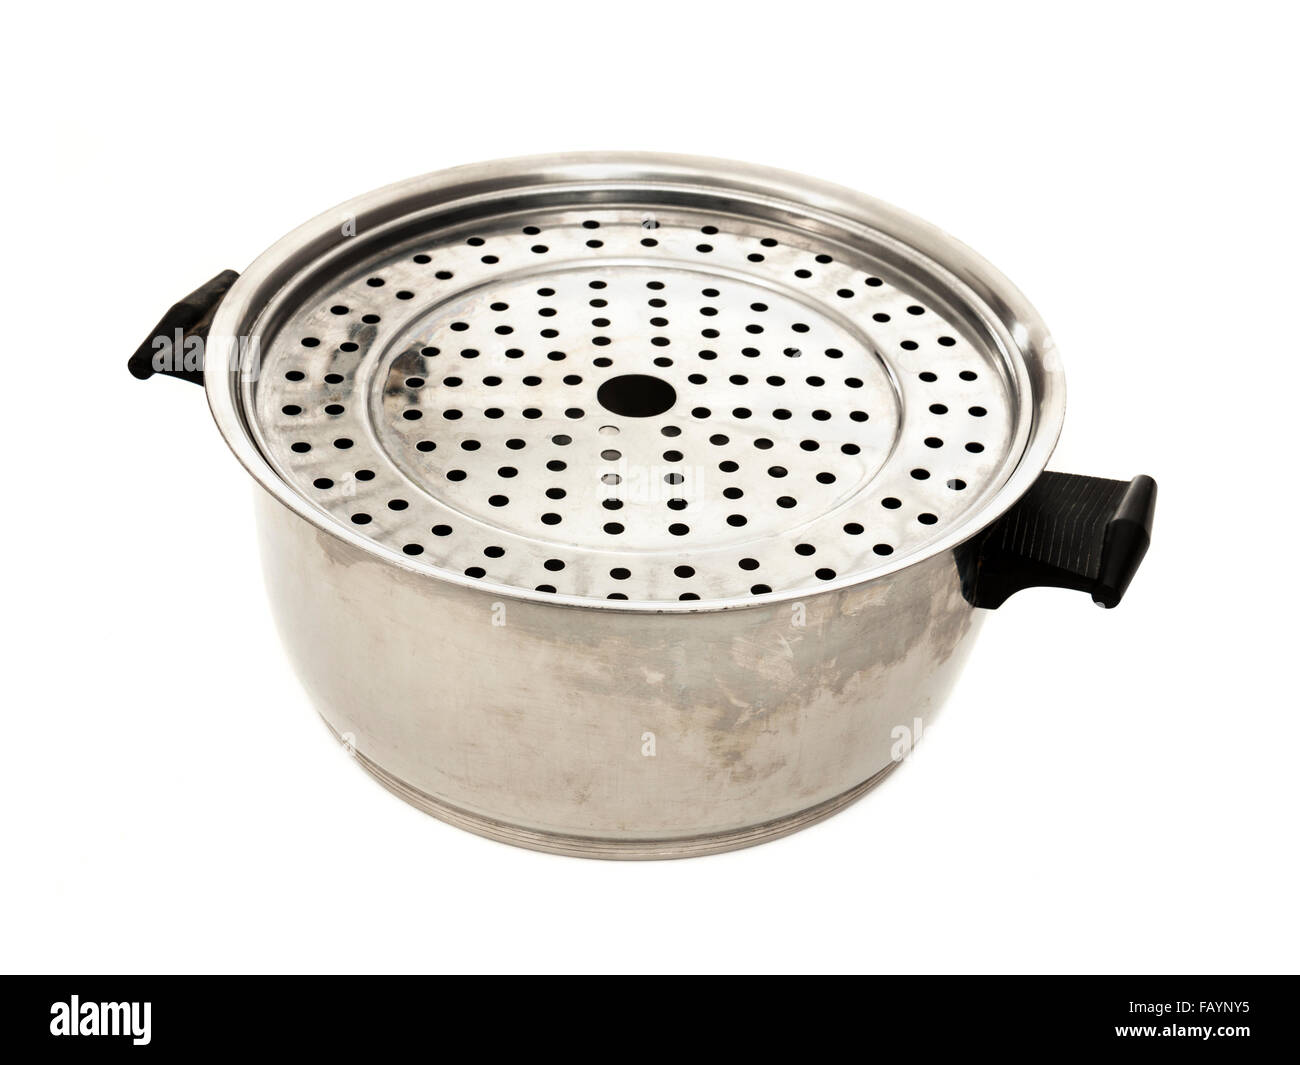 Rena-ware 'desprovisto de agua Utensilios de cocina de acero inoxidable  Fotografía de stock - Alamy